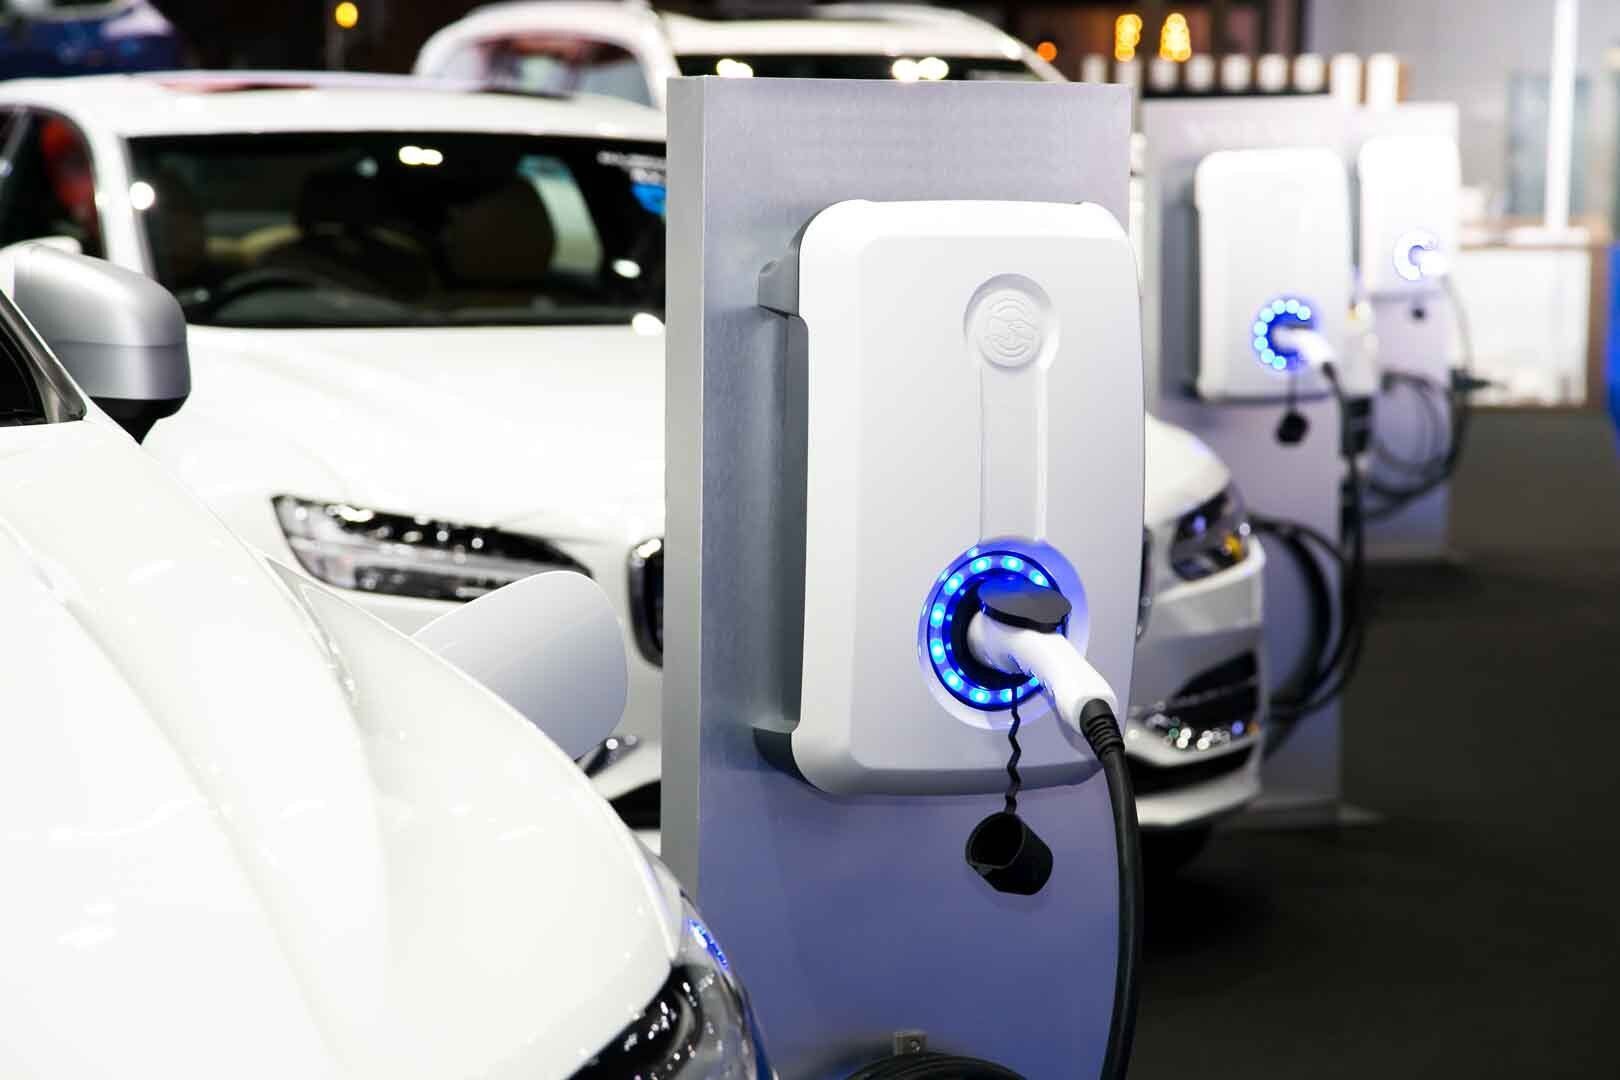 Borne de recharge électrique dans un parking